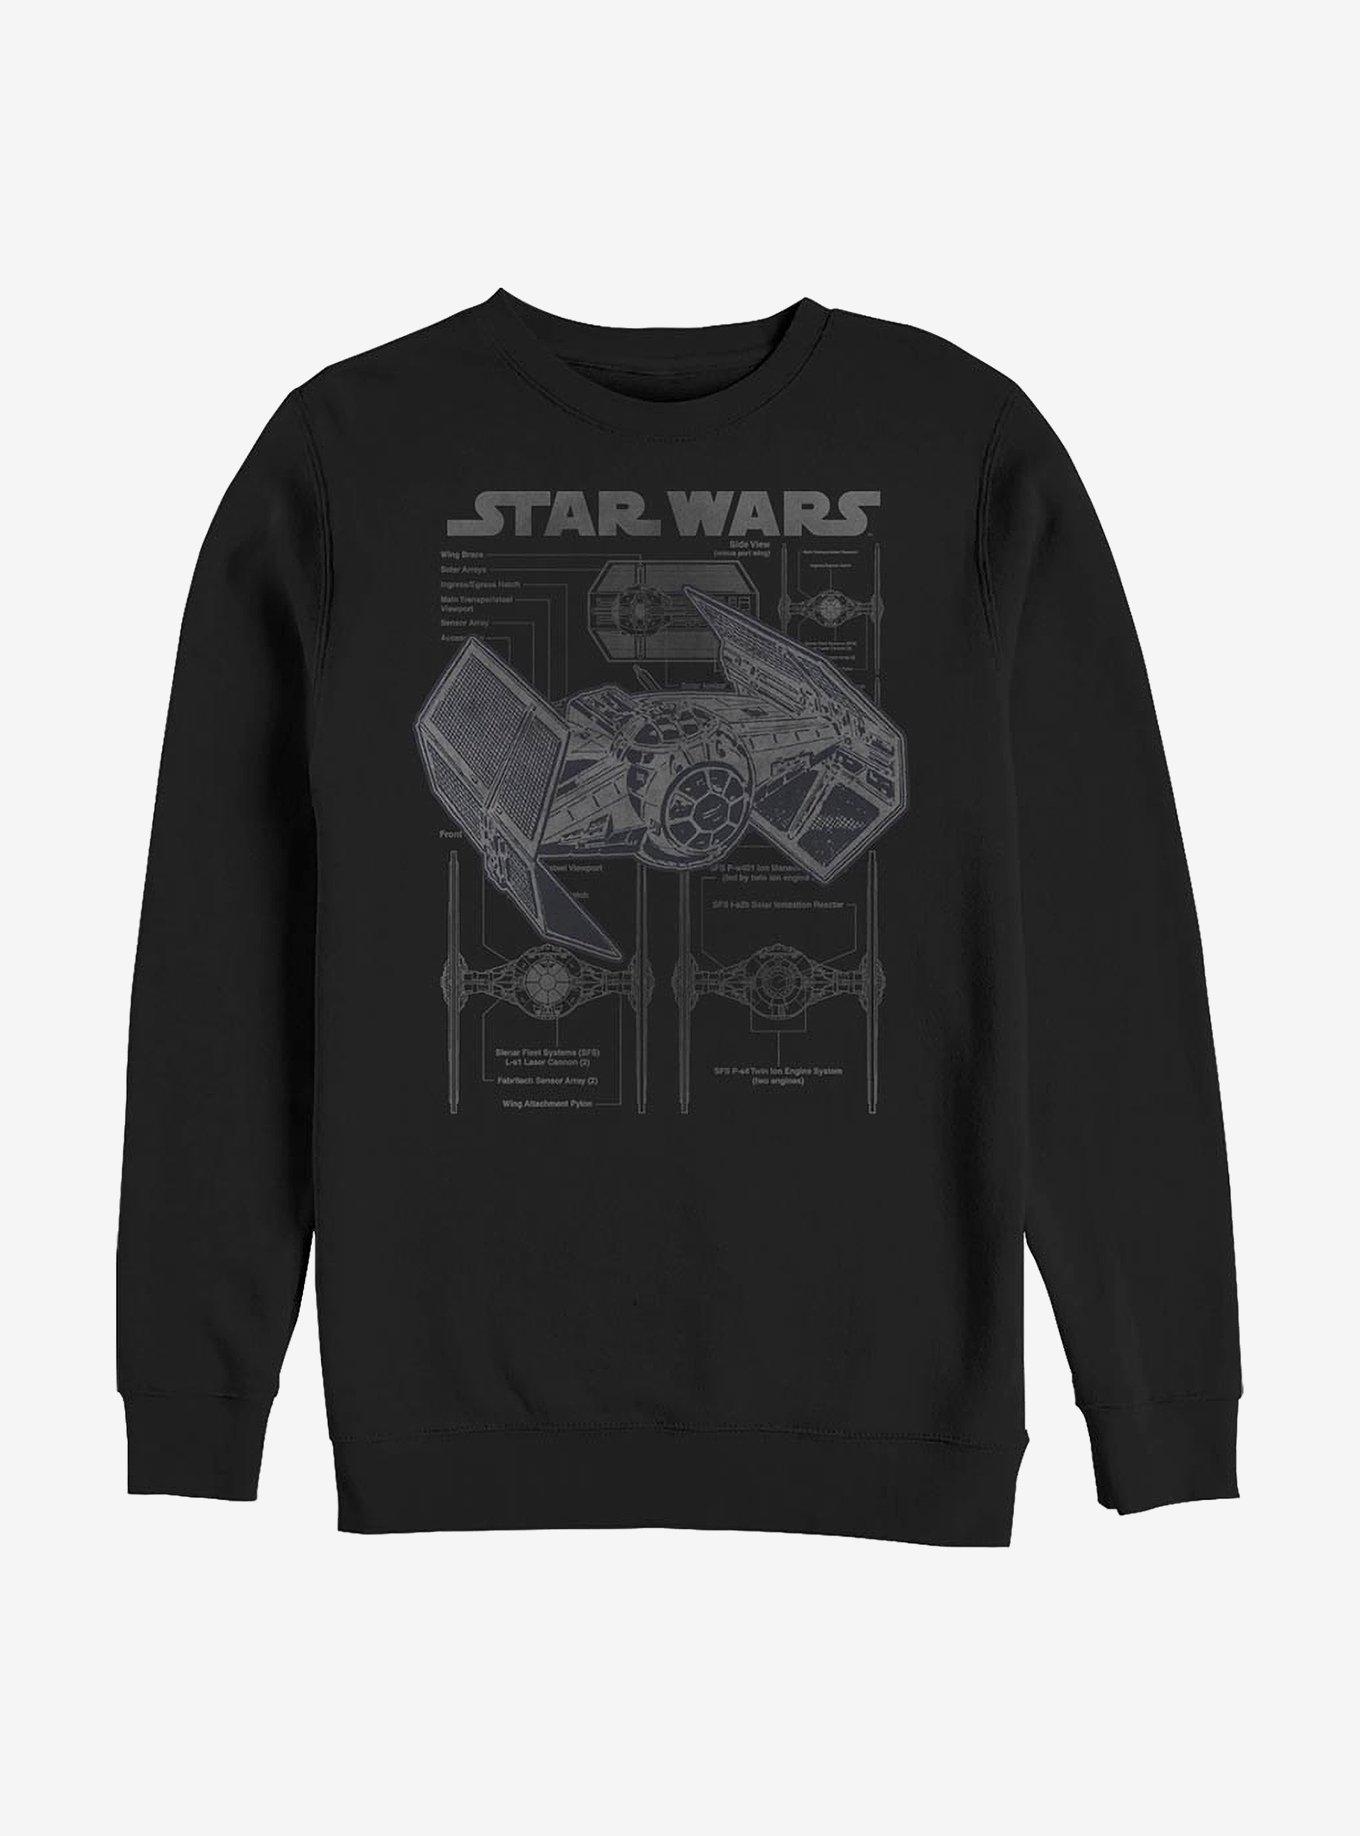 Star Wars Tie Fighter Crew Sweatshirt